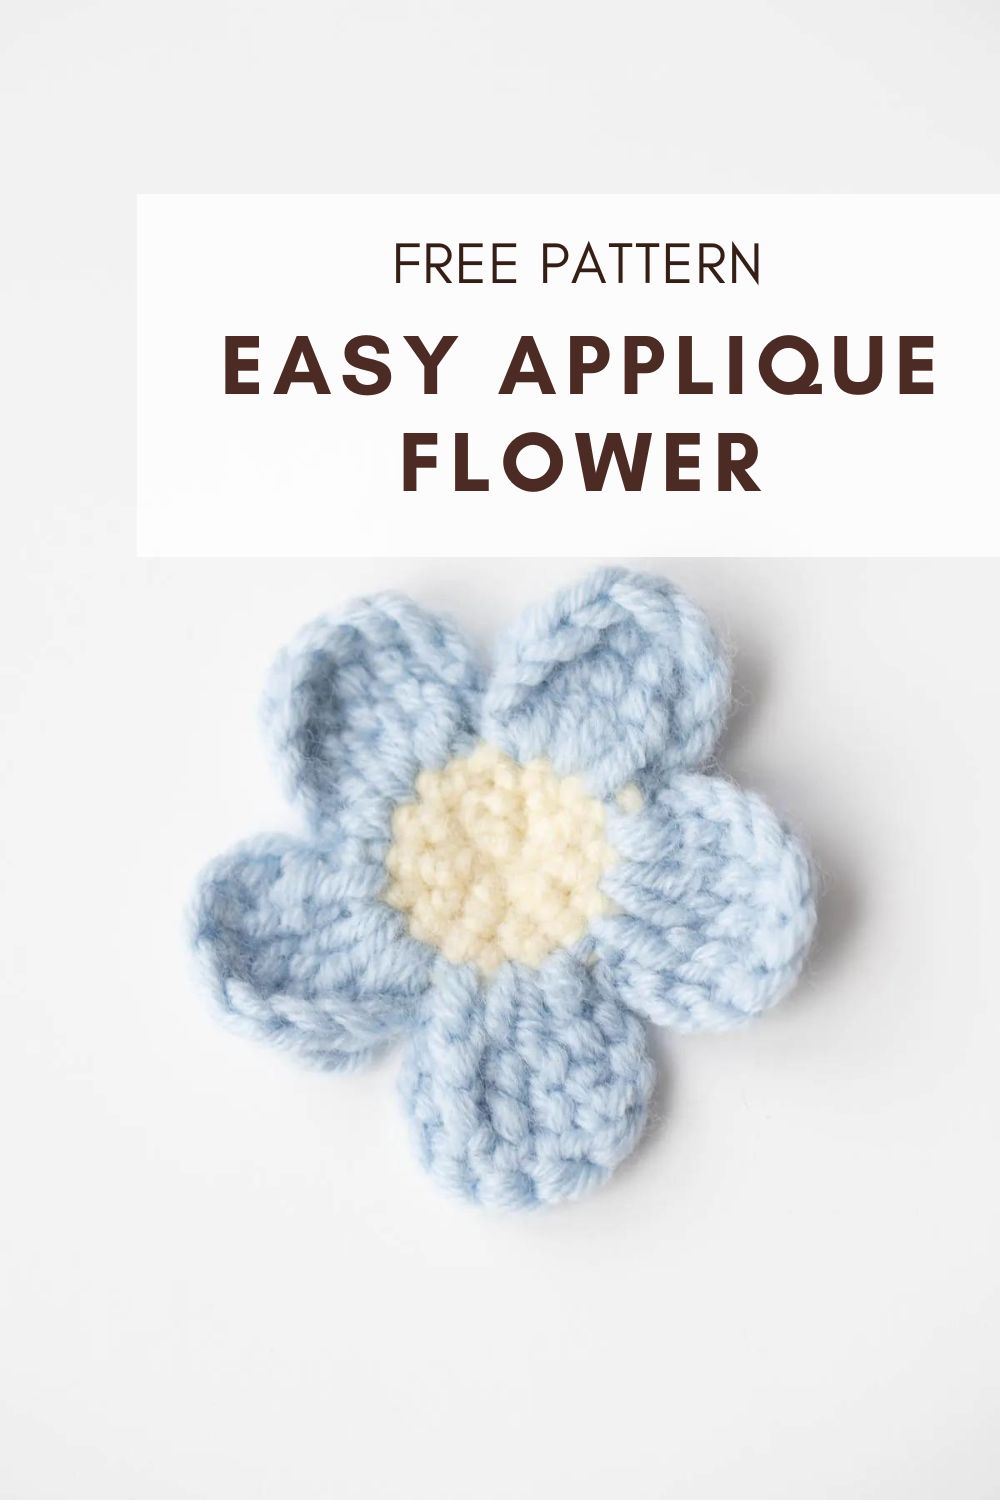 Crochet Easy Applique Flower Free Pattern - Hookok